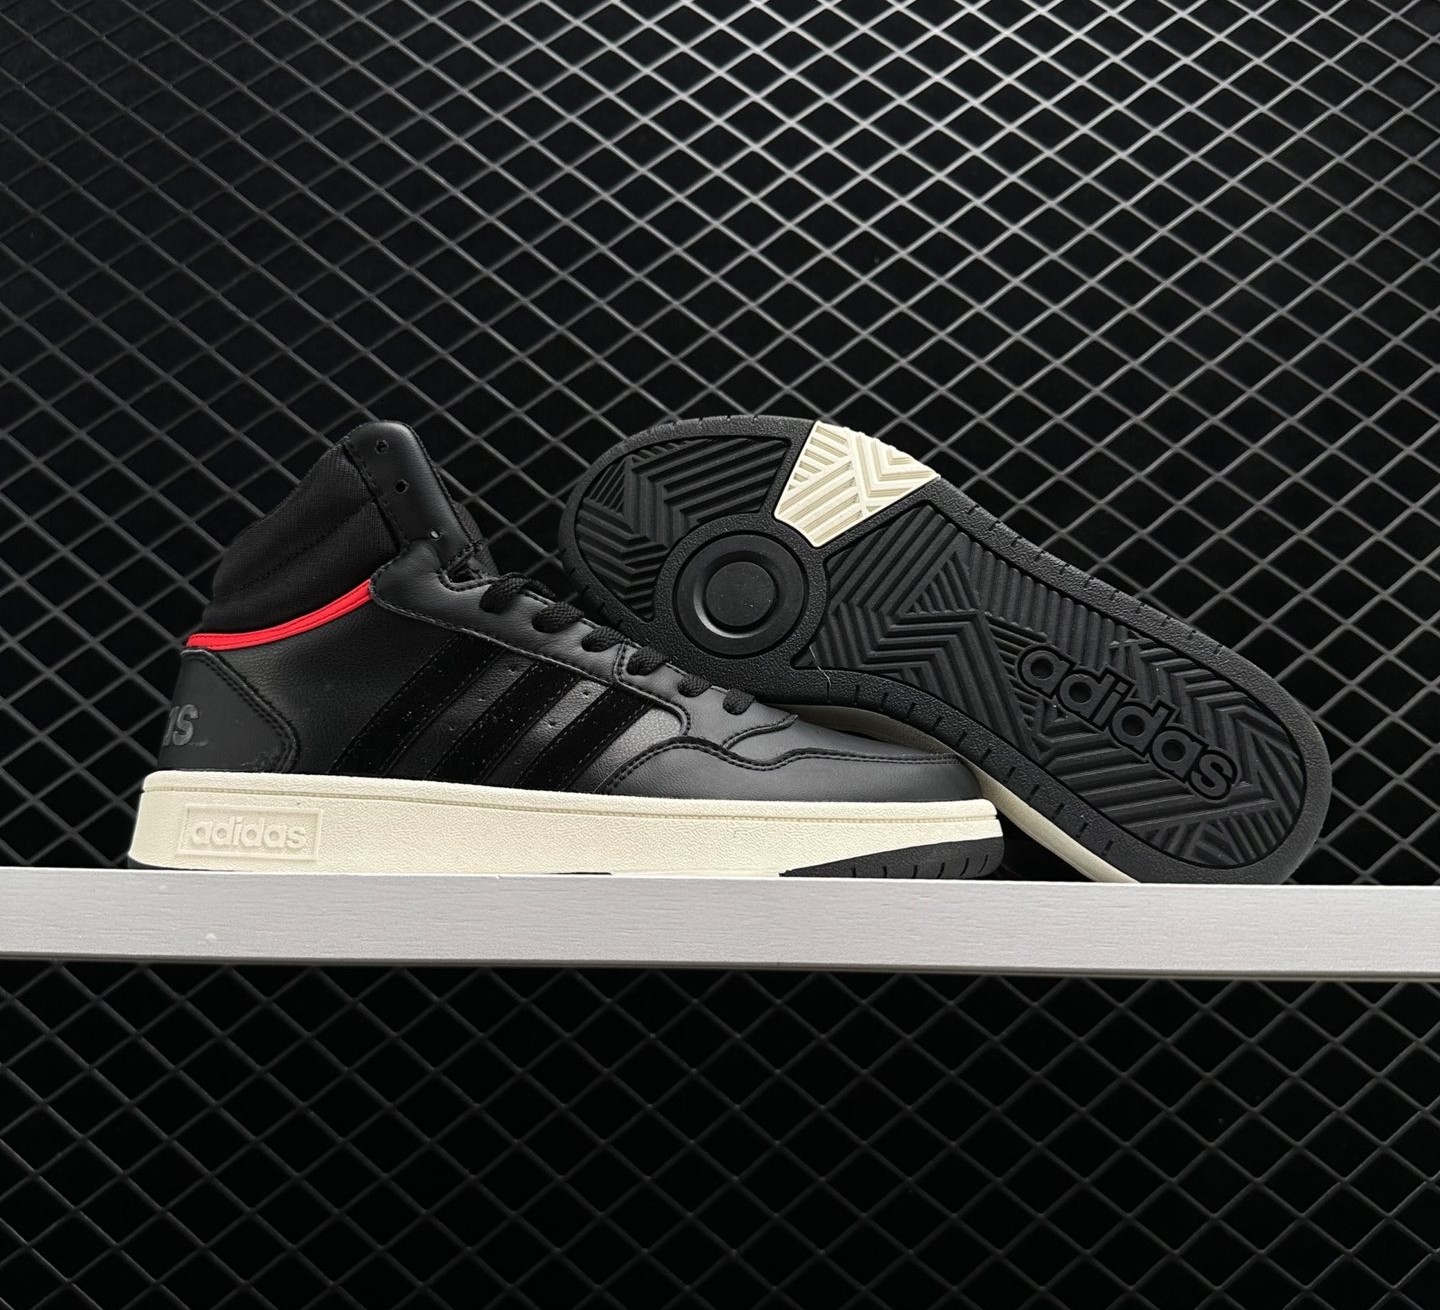 Adidas Hoops 3.1 Mid Black Vivid Red - Trendy Athletic Footwear